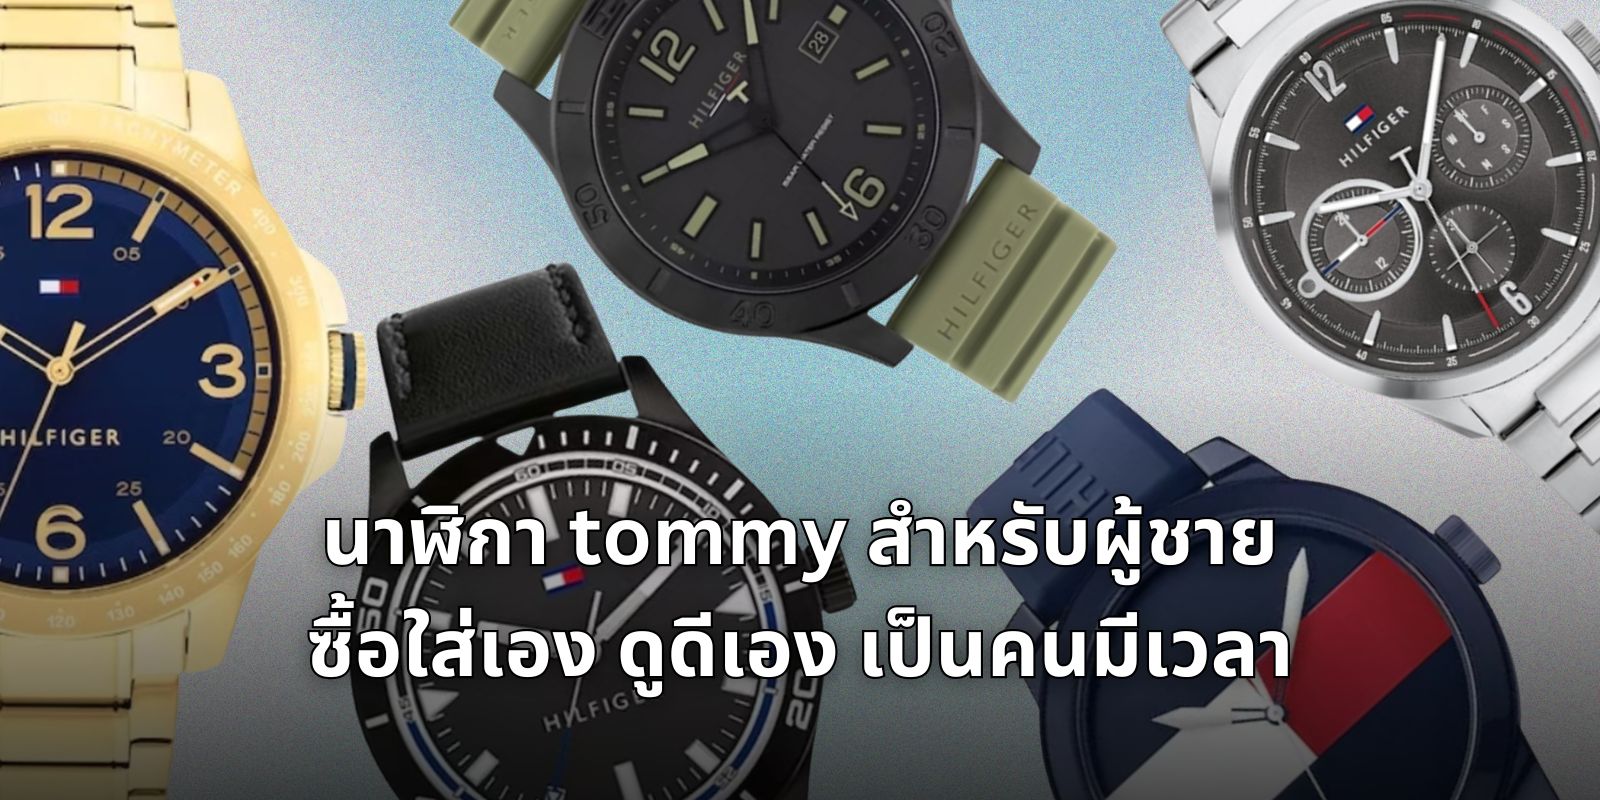 นาฬิกา tommy สำหรับผู้ชาย ซื้อใส่เอง ดูดีเอง เป็นคนมีเวลา